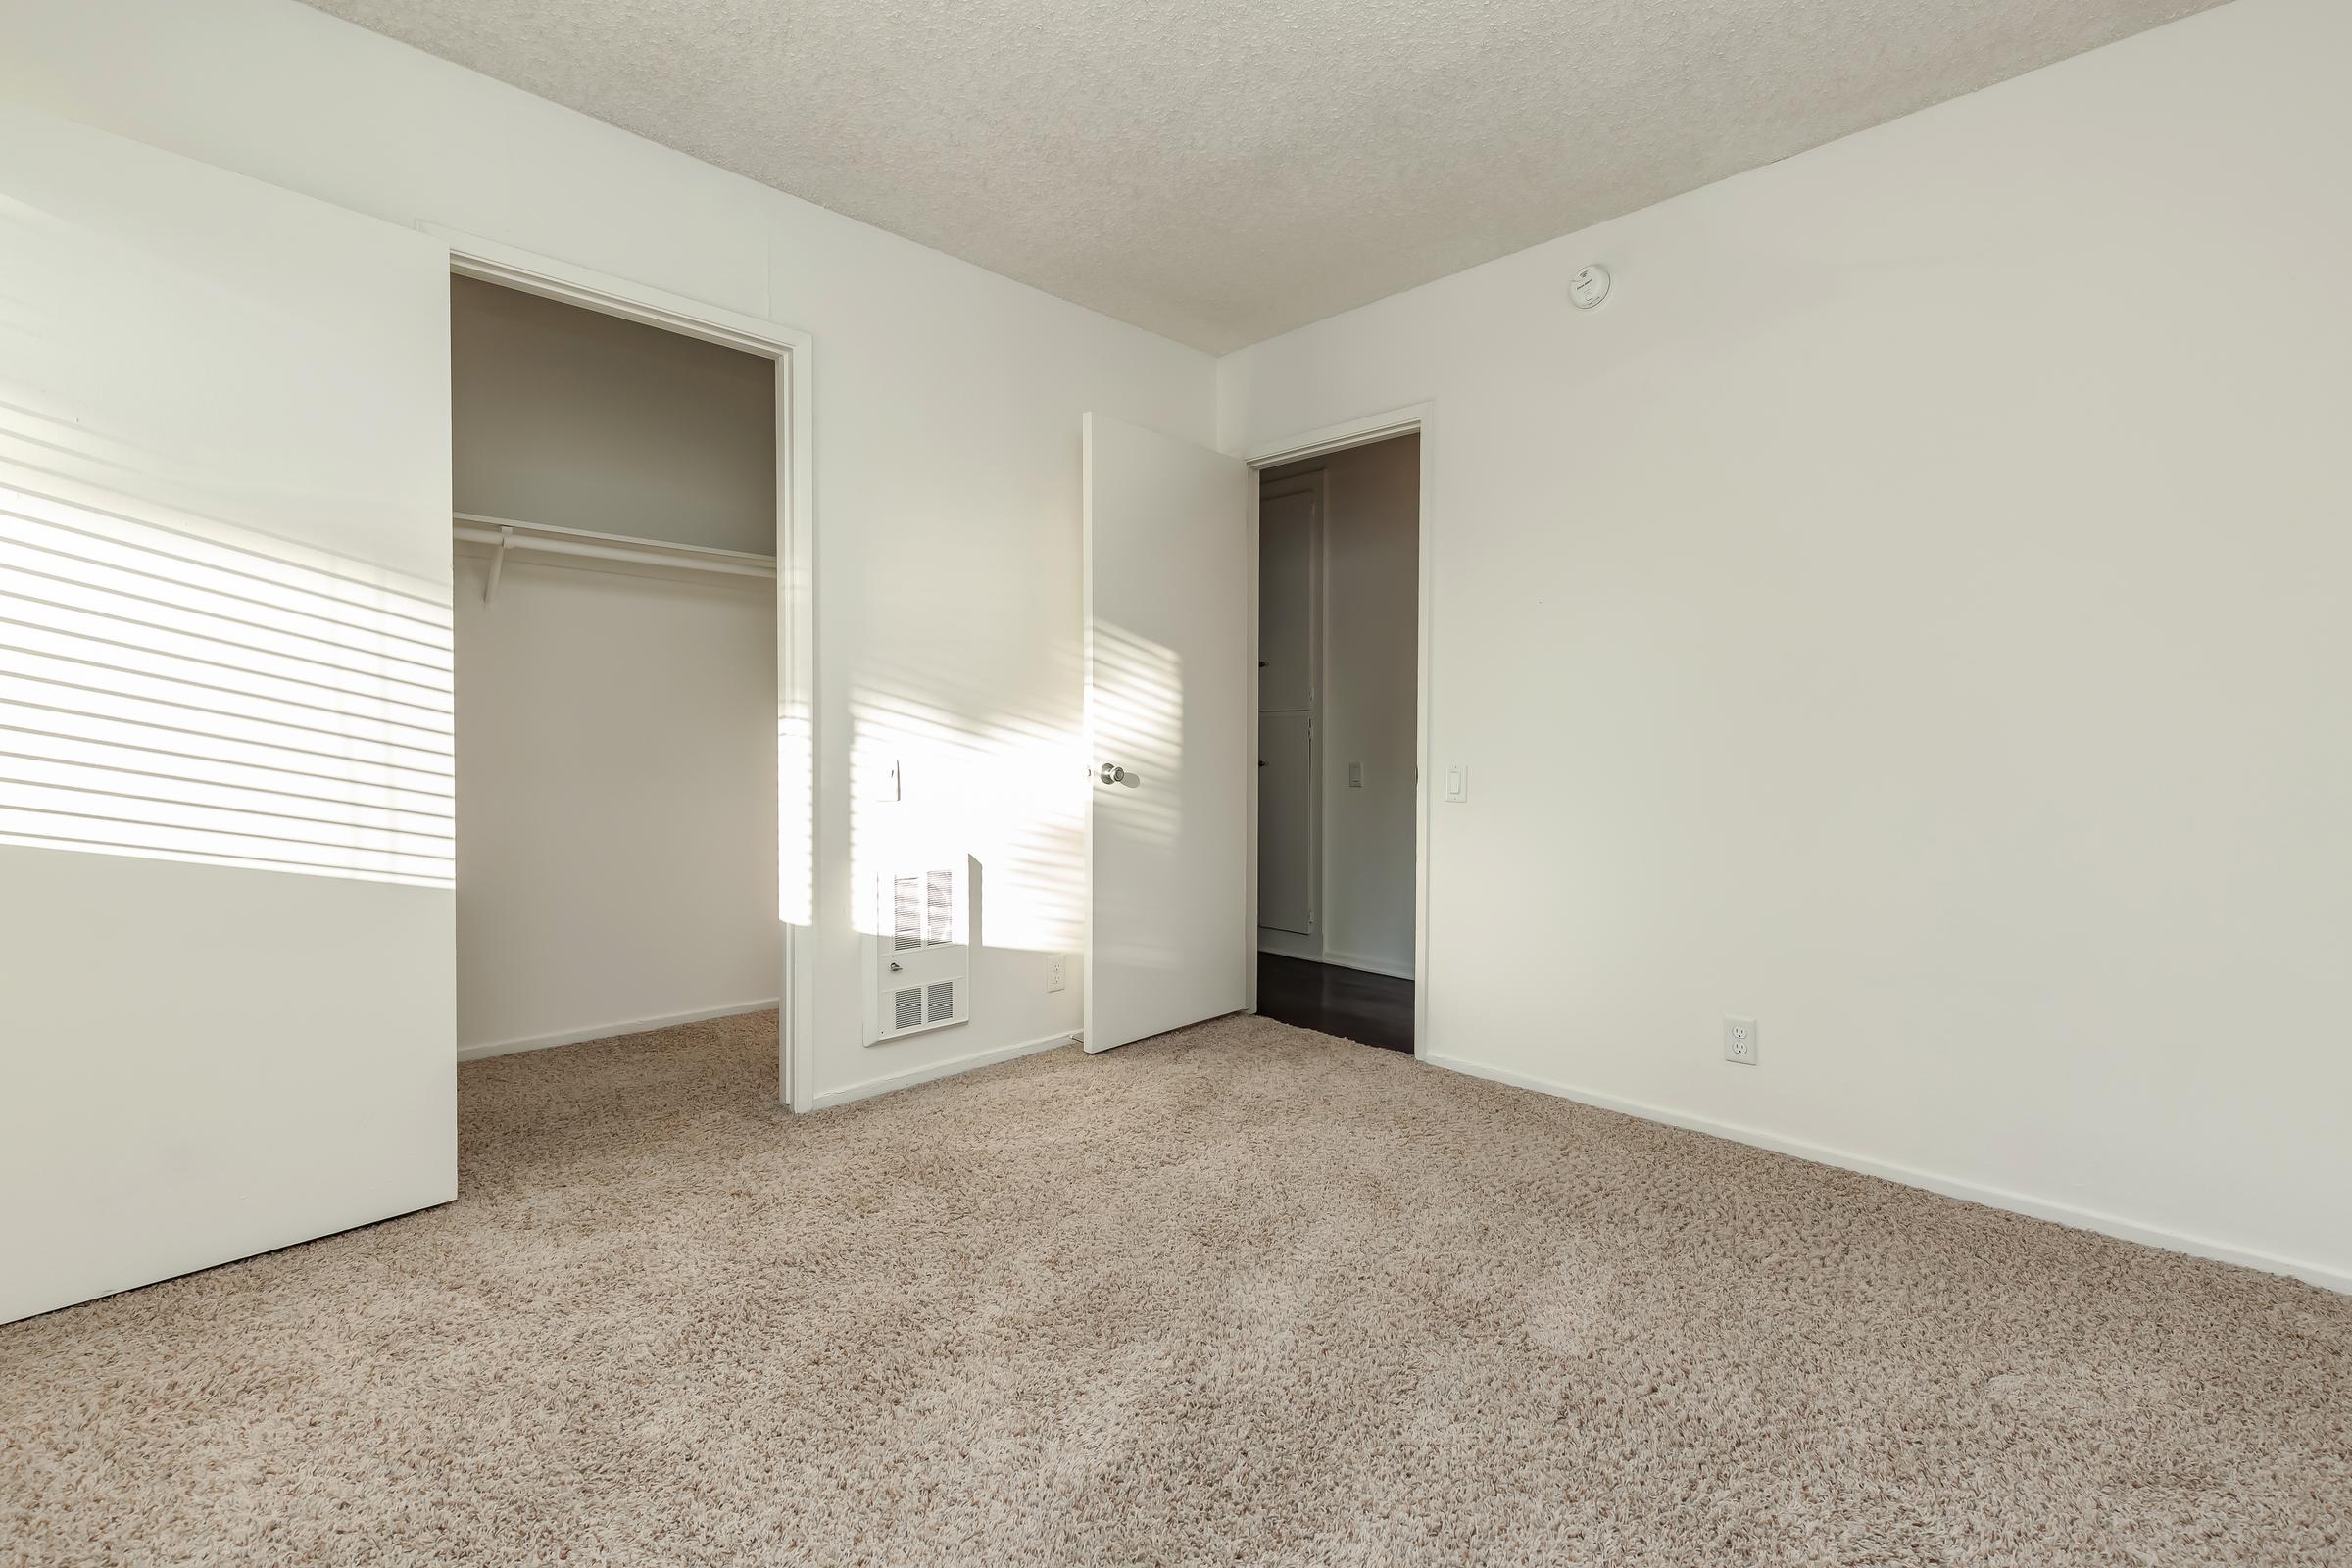 Carpeted bedroom with open walk-in closet door